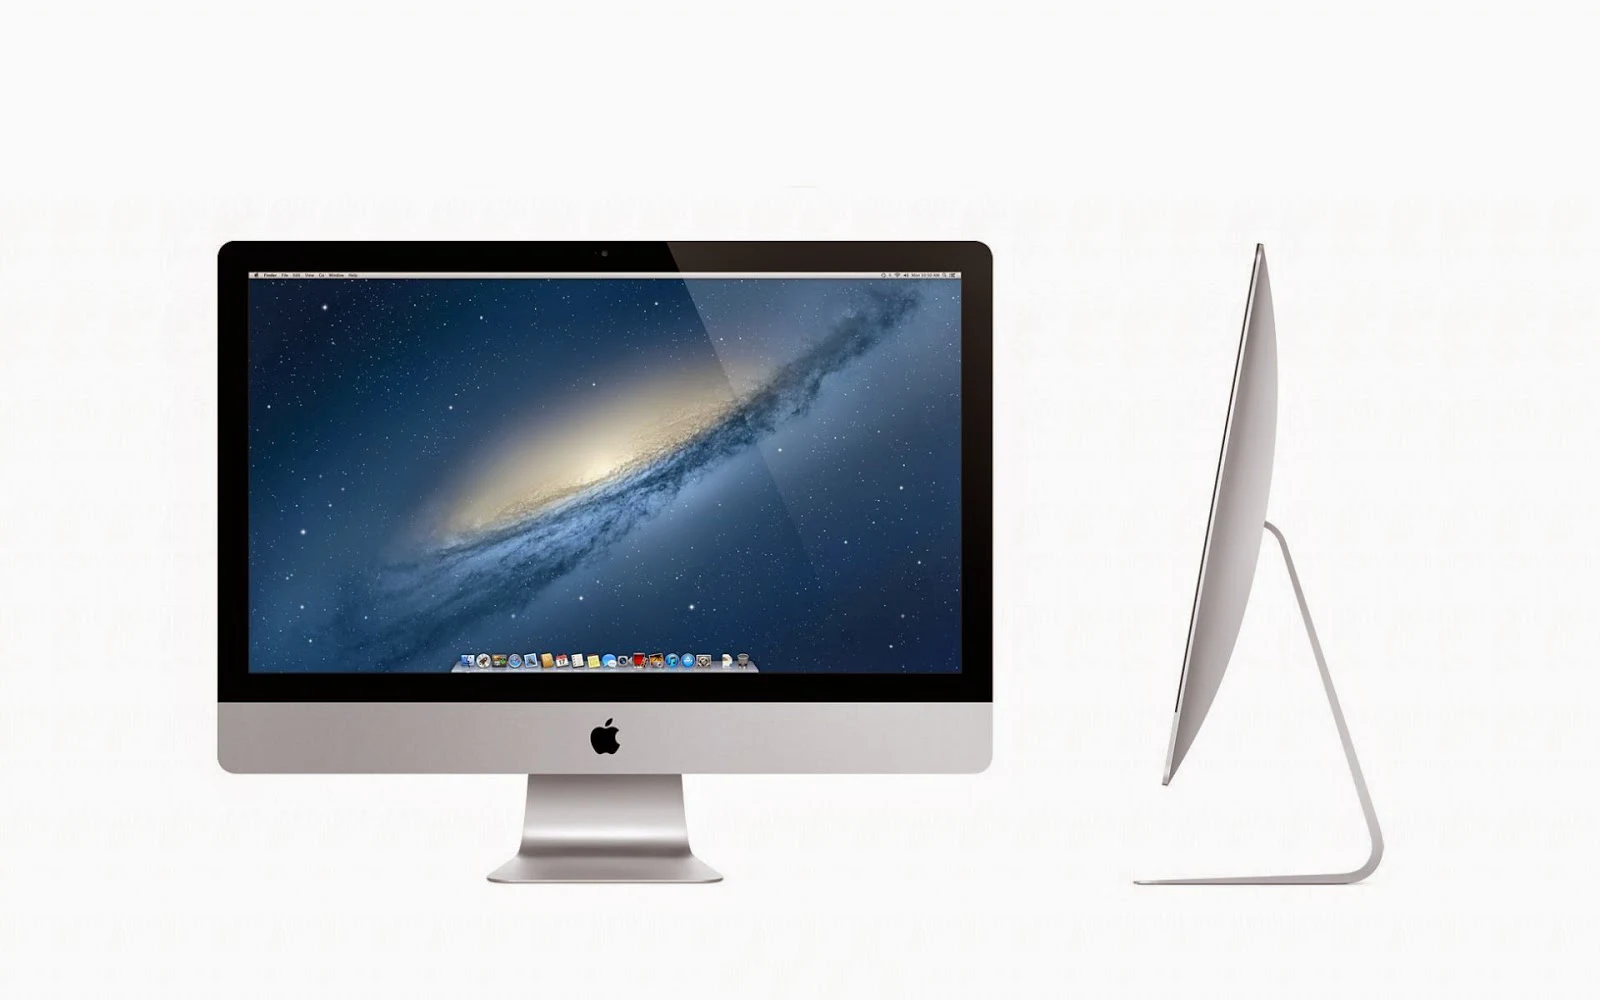 Apple wallpaper met een iMac 27 inch scherm